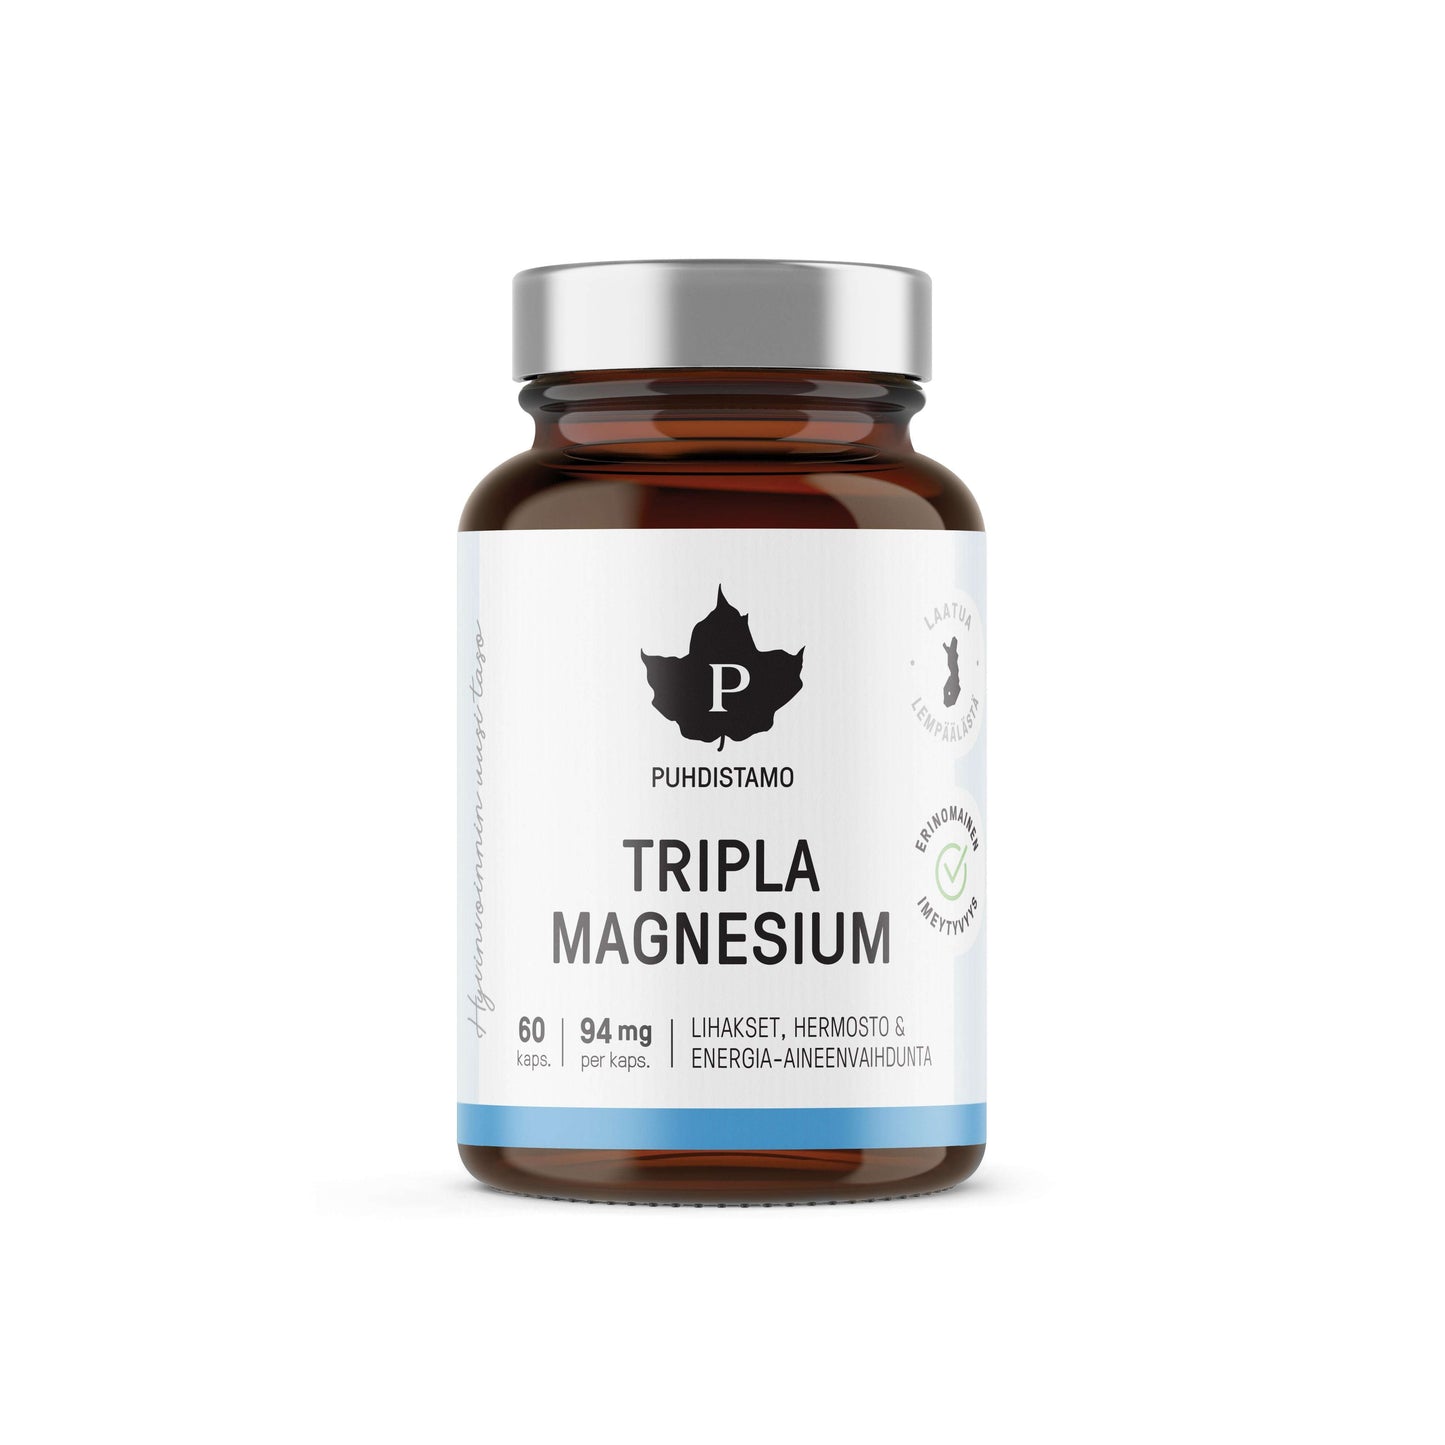 Puhdistamo Tripla Magnesium-Puhdistamo-Hyvinvoinnin Tavaratalo